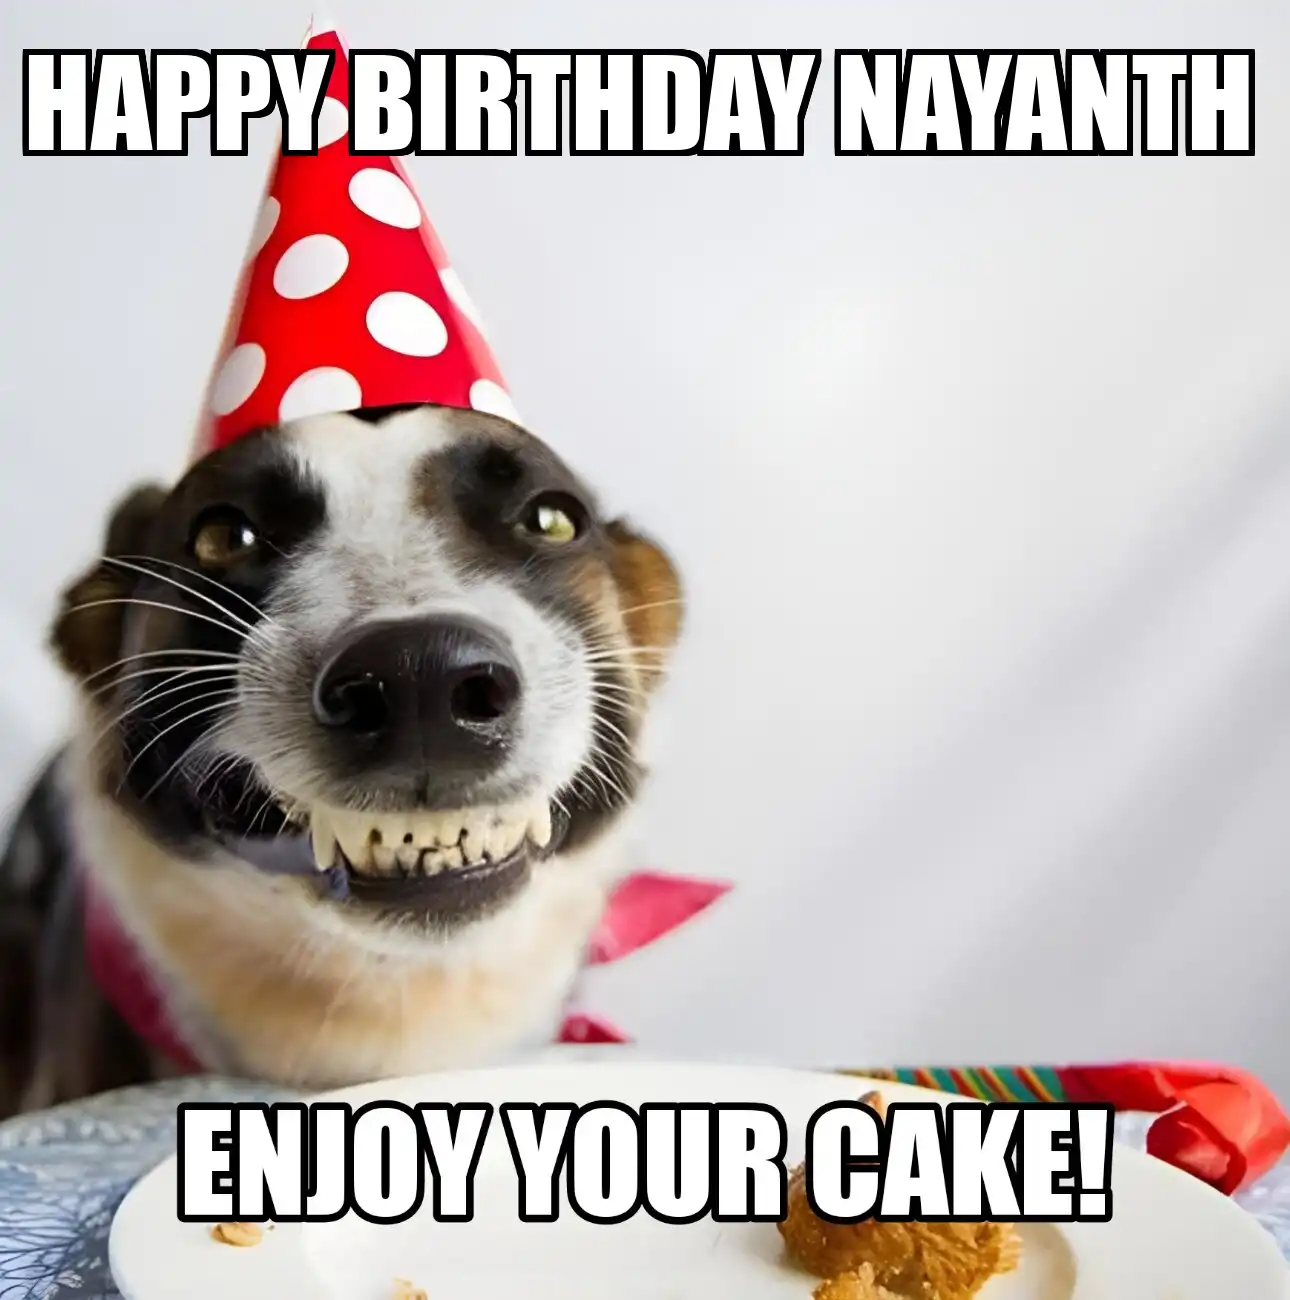 Happy Birthday Nayanth Enjoy Your Cake Dog Meme